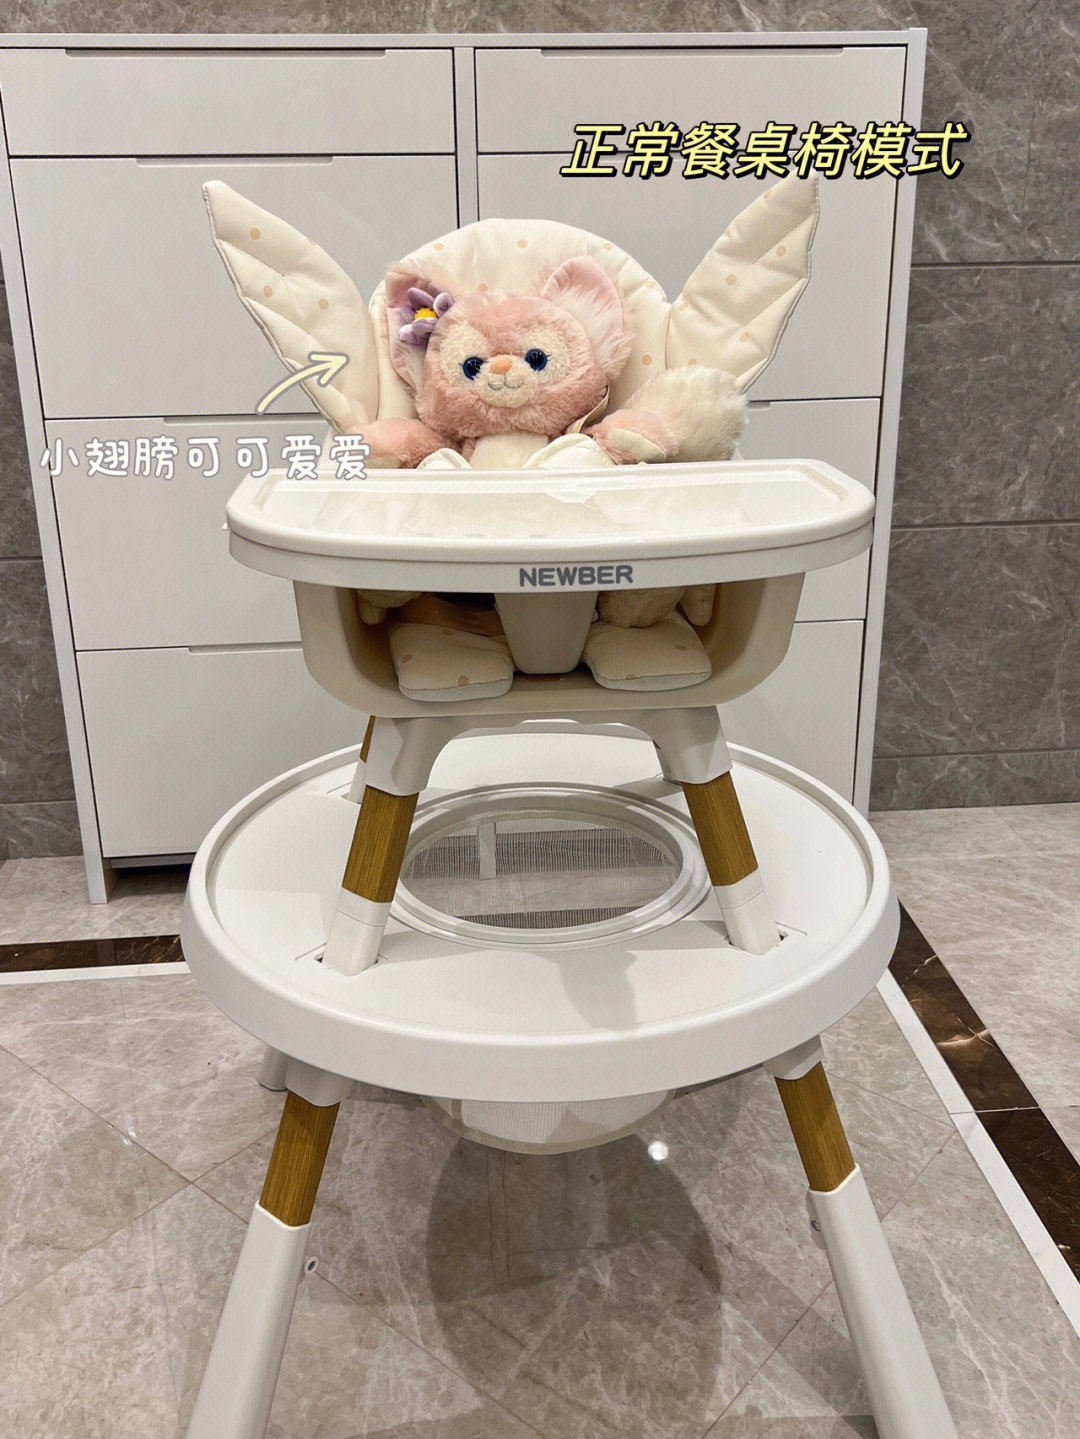 奶粉罐自制宝宝餐桌椅图片